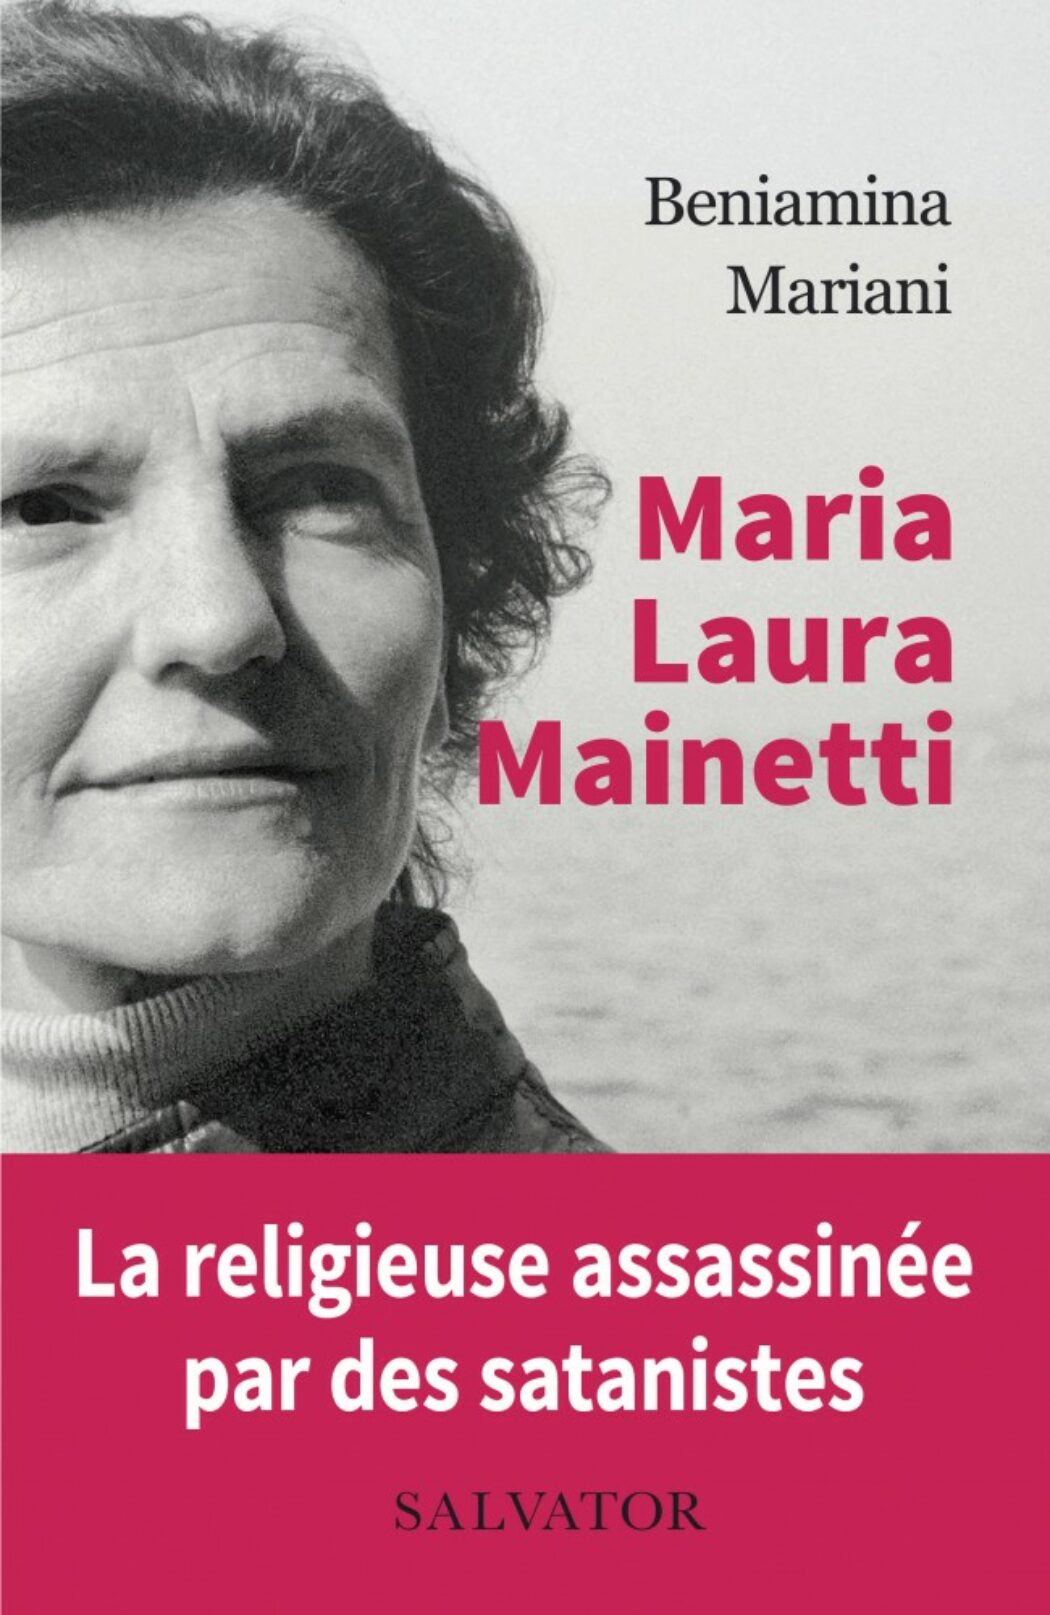 Soeur Maria Laura assassinée par des satanistes